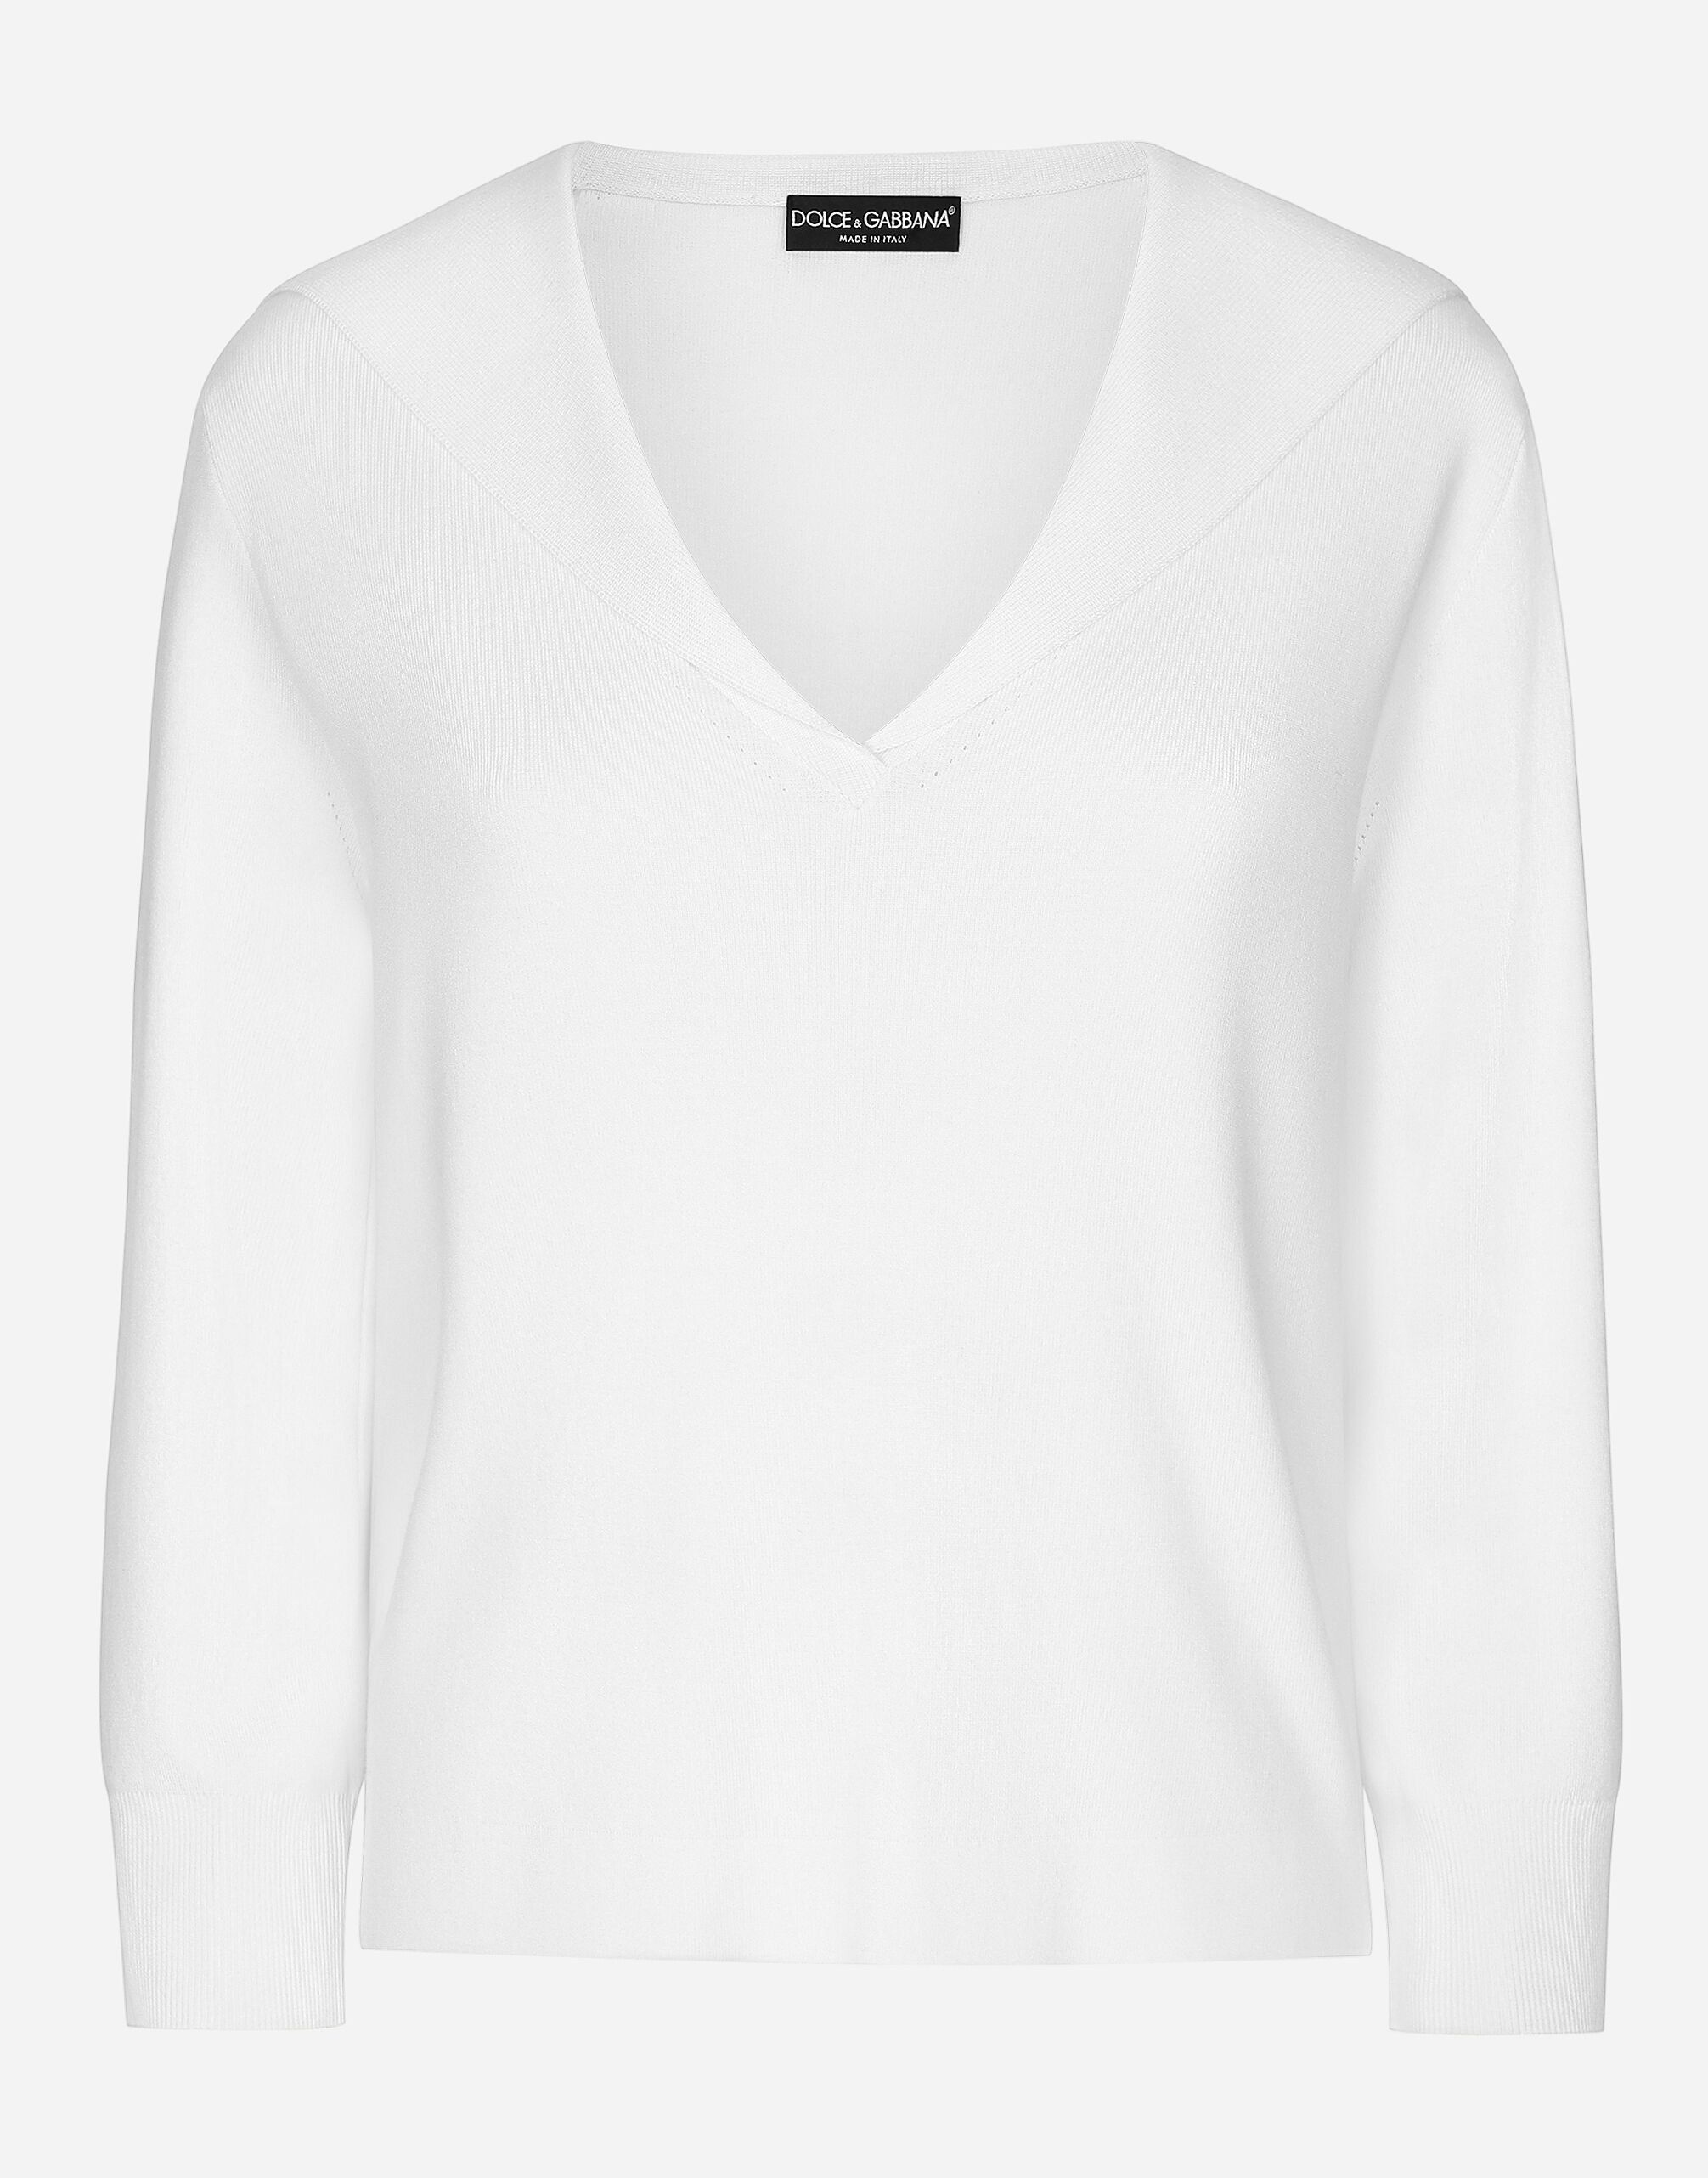 Dolce & Gabbana Viscose sweater with sailor collar White F8V06TGDCK6